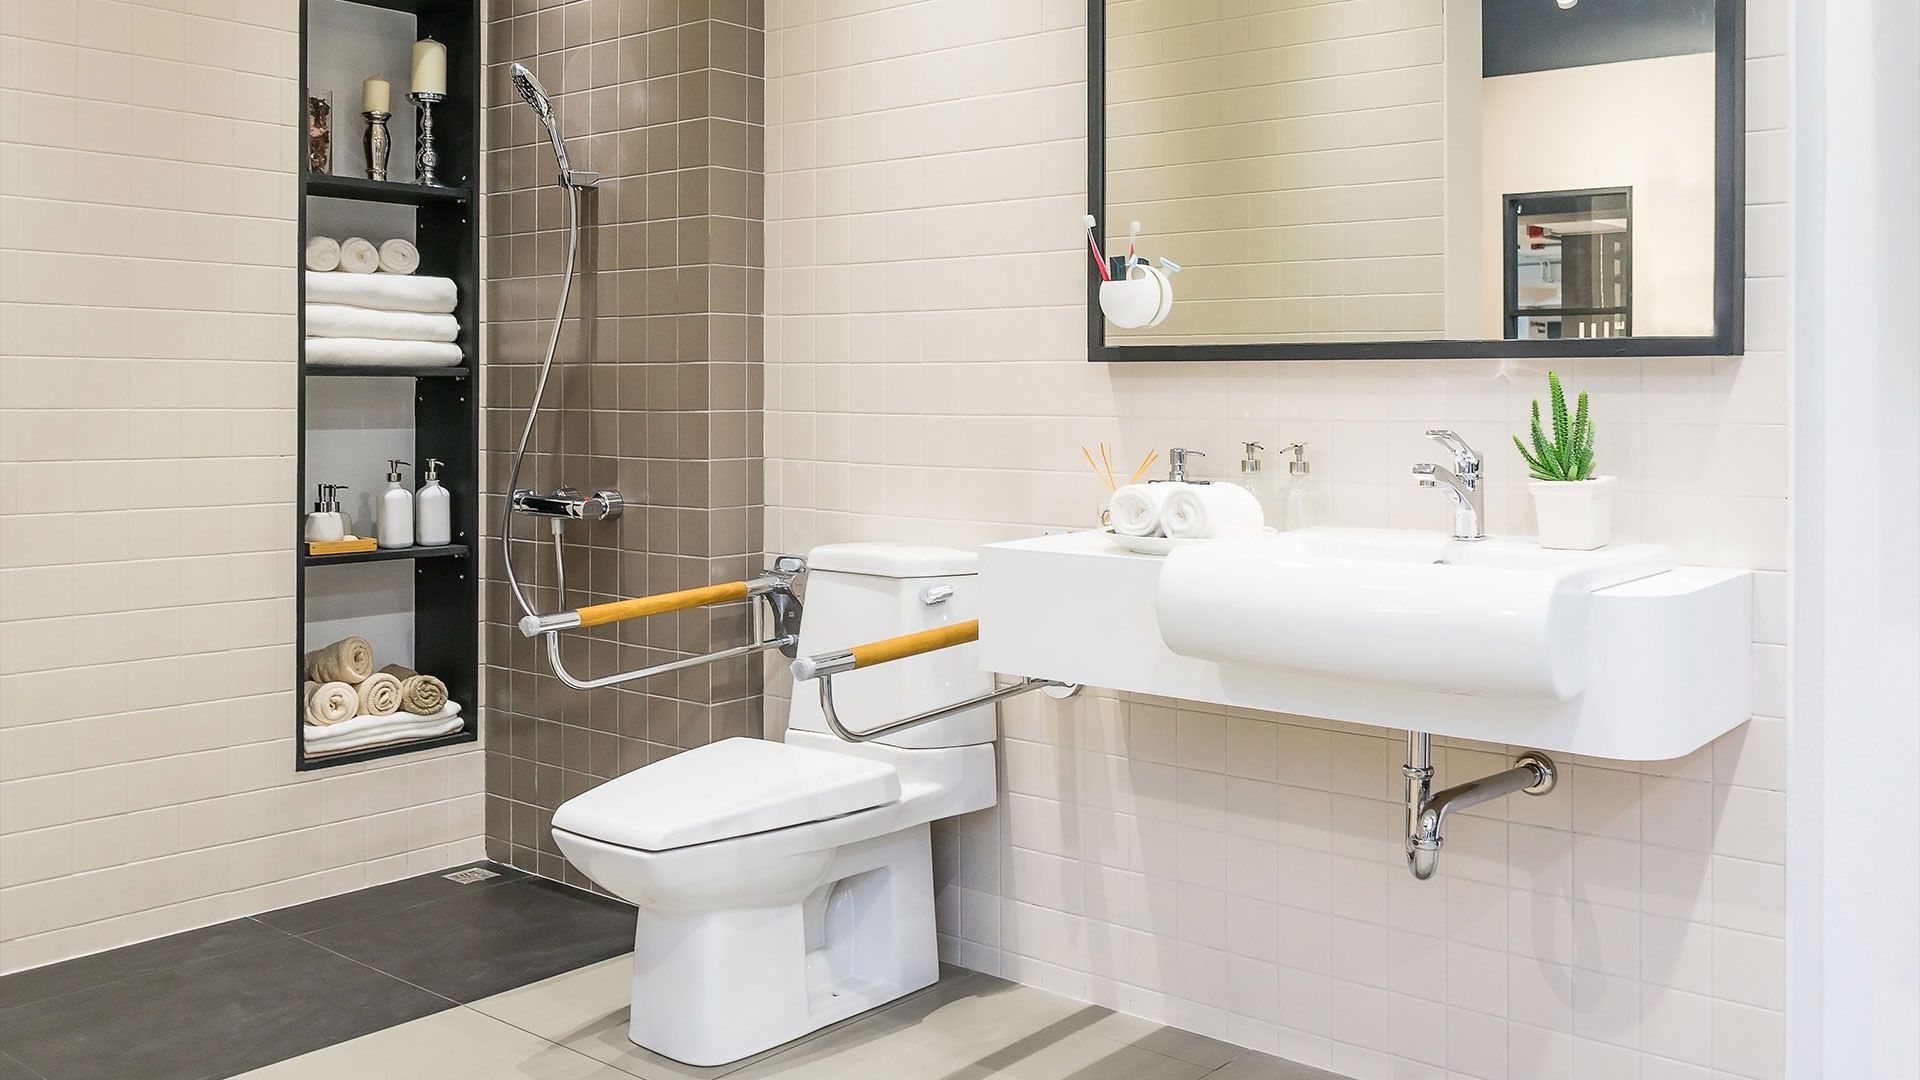 Salle de bains aménagée pour une personne à mobilité réduite 